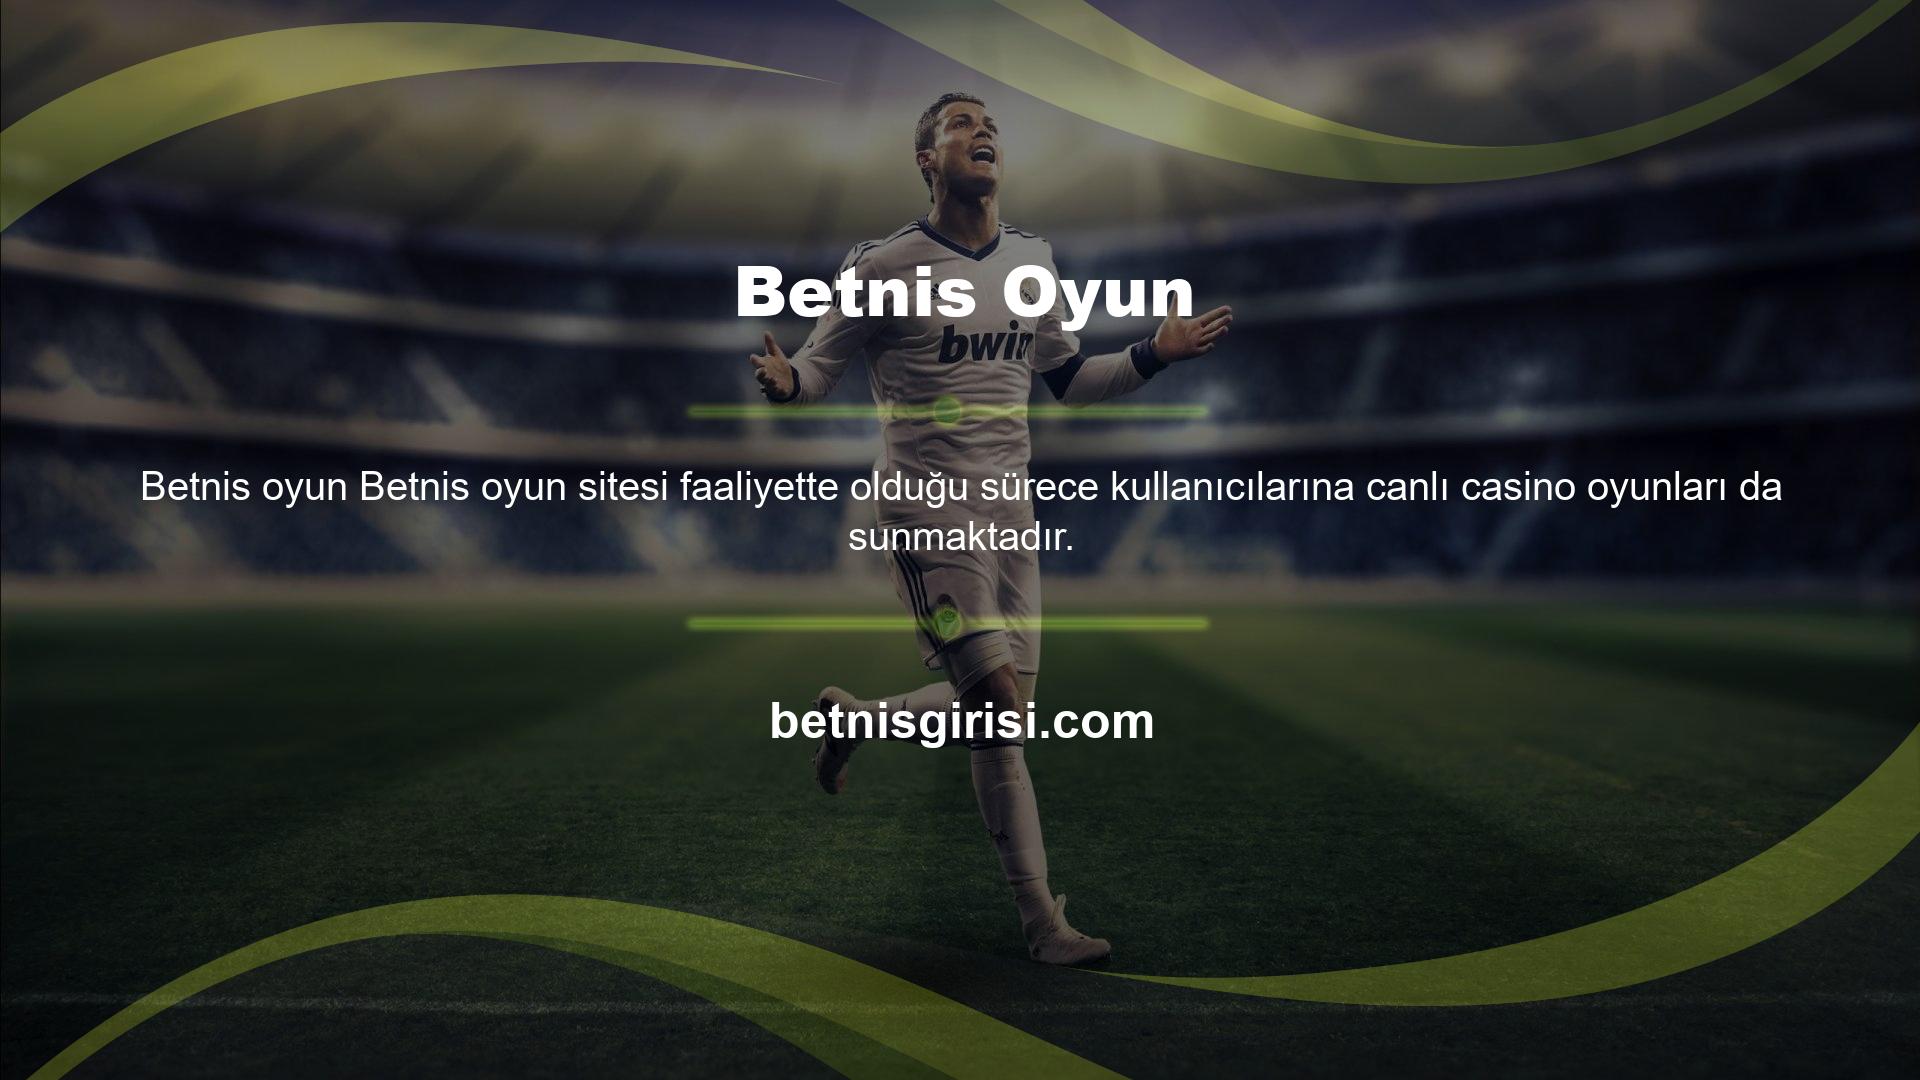 Betnis, ülkemiz casino pazarında çok önemli bir konuma sahiptir ve başarılı bir şekilde Türk kullanıcıları kendine çekmiş ve sitelerinde tam olarak barındırmıştır